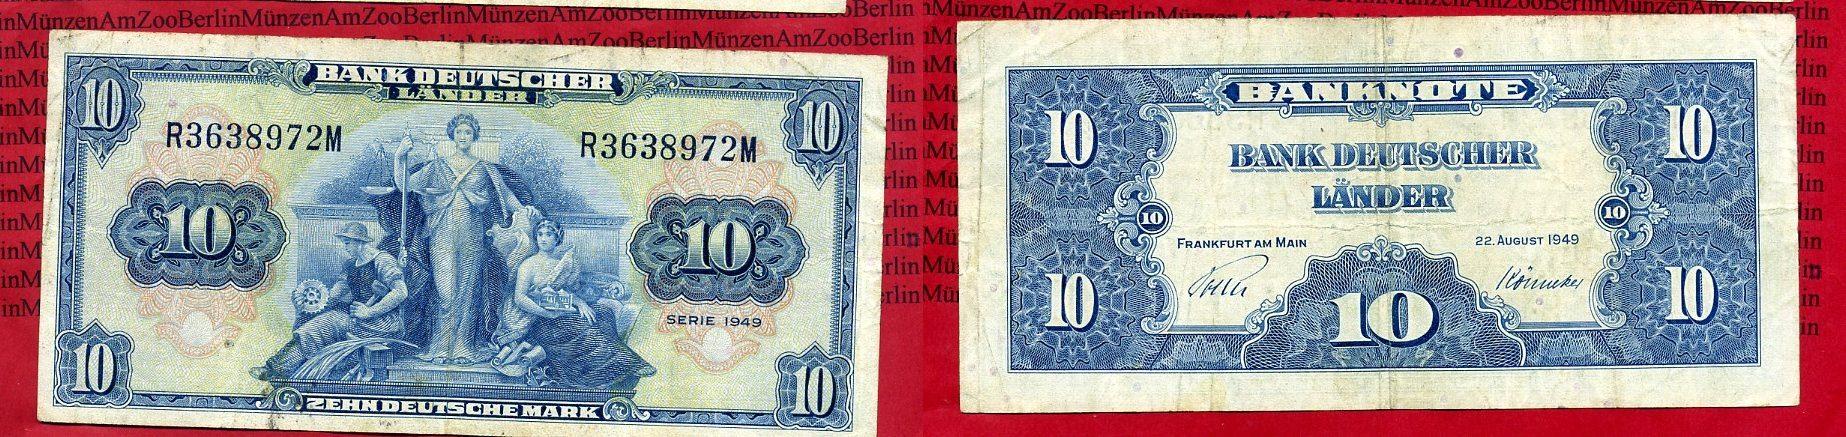 Foto Brd, Bank Deutscher Länder 10 Deutsche Mark Bank Deutscher Länder 1949 foto 85359